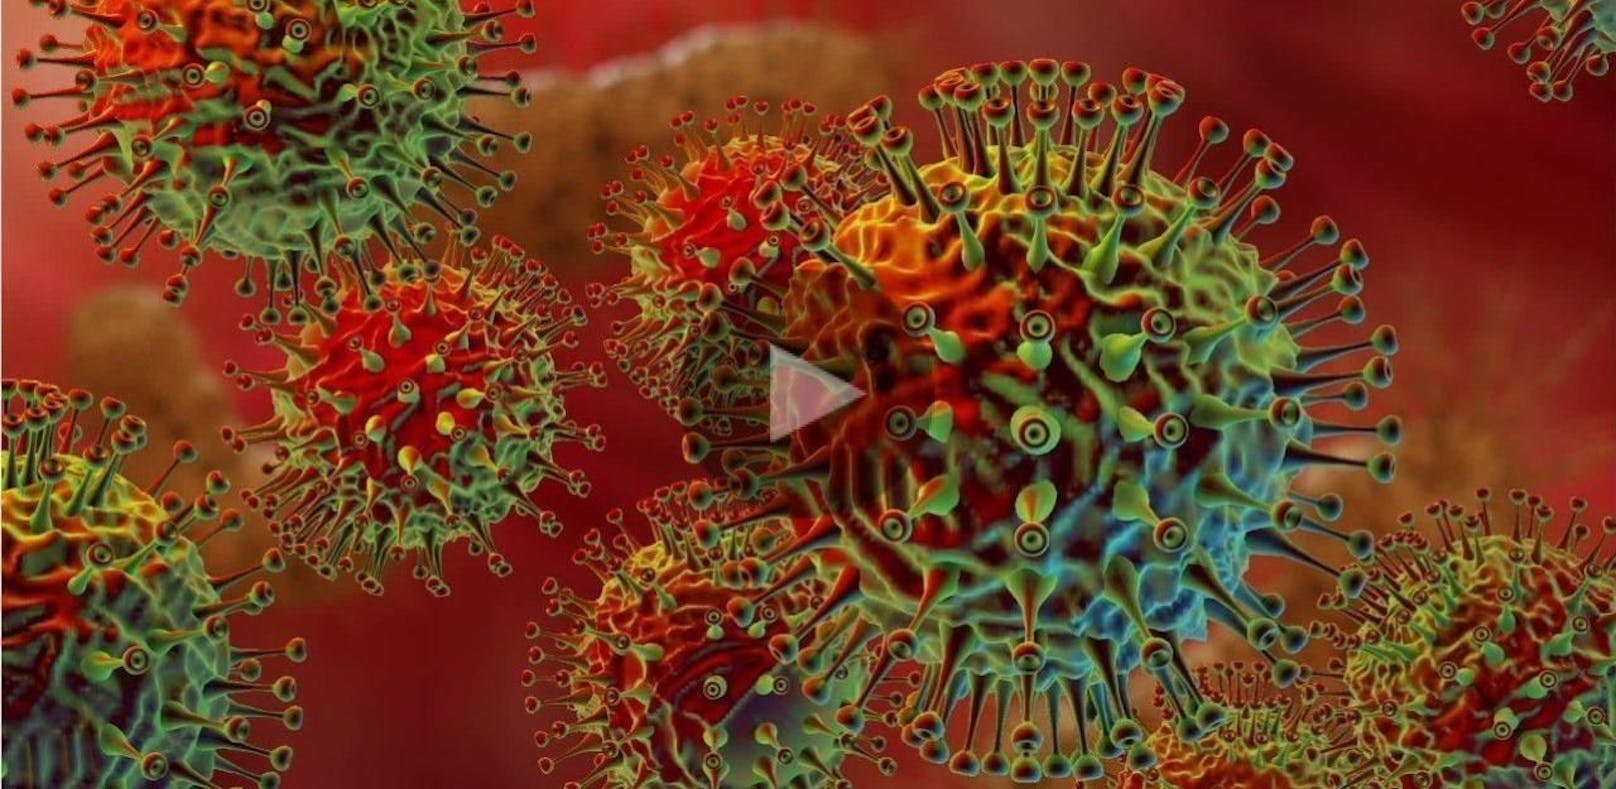 Neuer Super-Virus könnte 900 Mio. Menschen töten